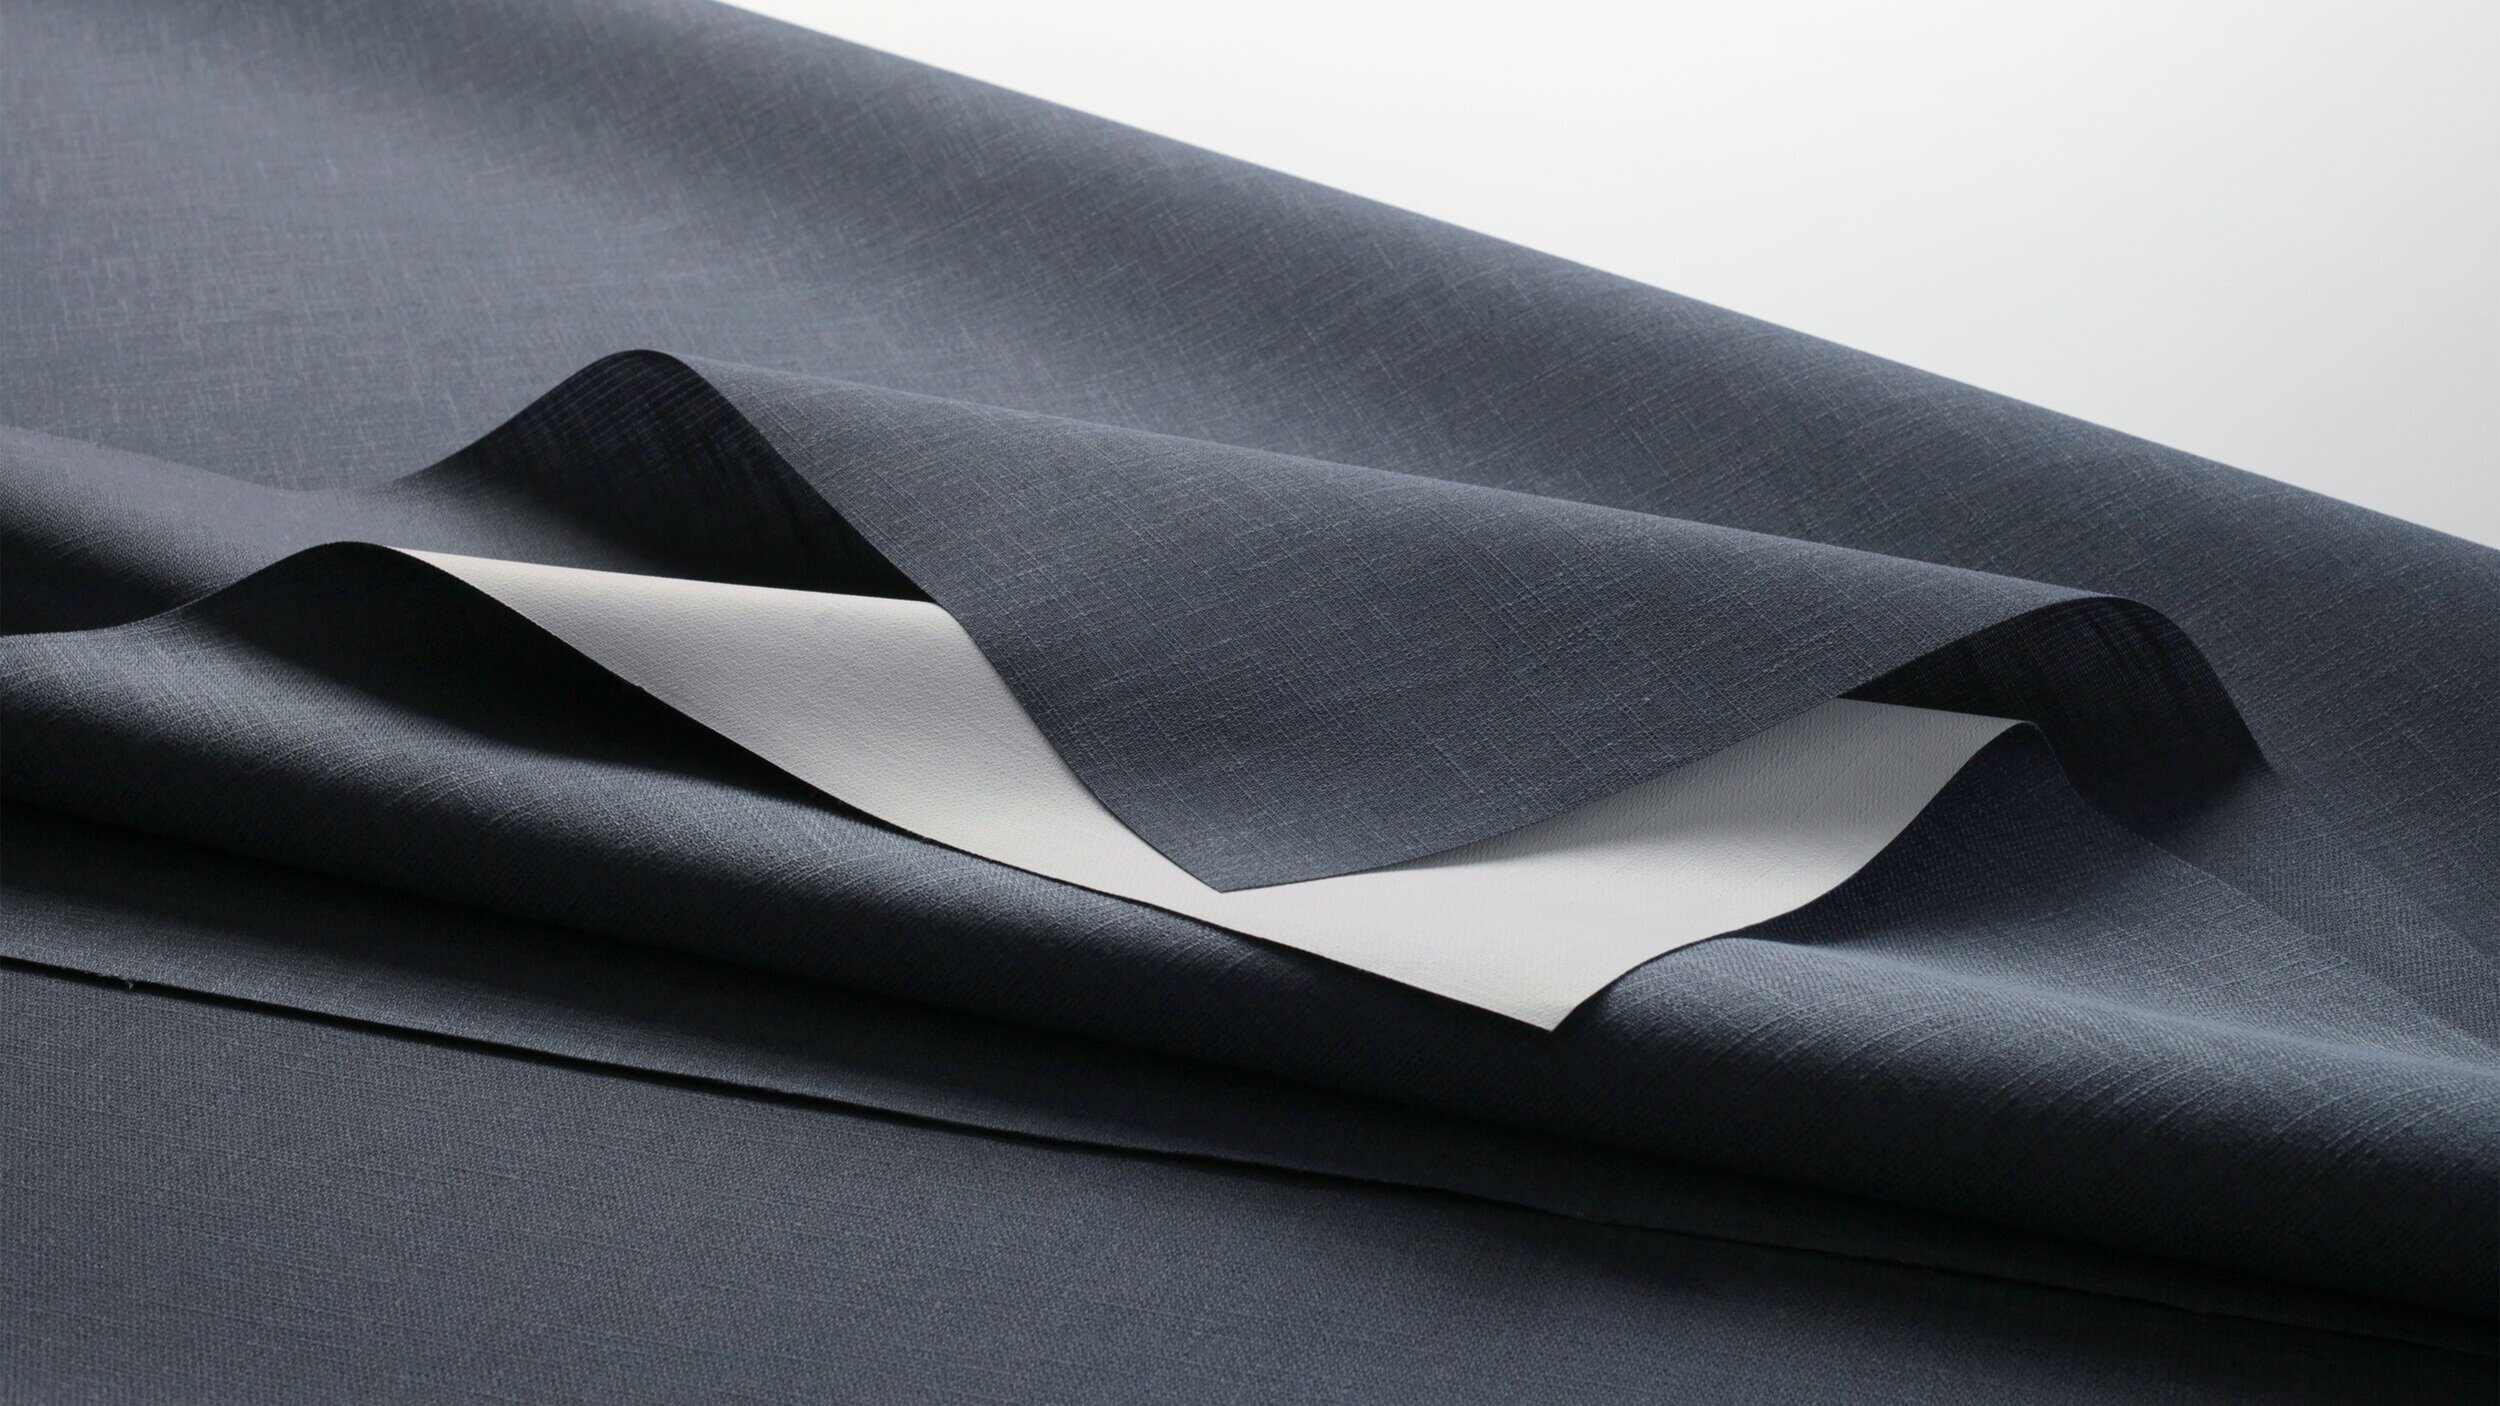 Textured, designer fabric